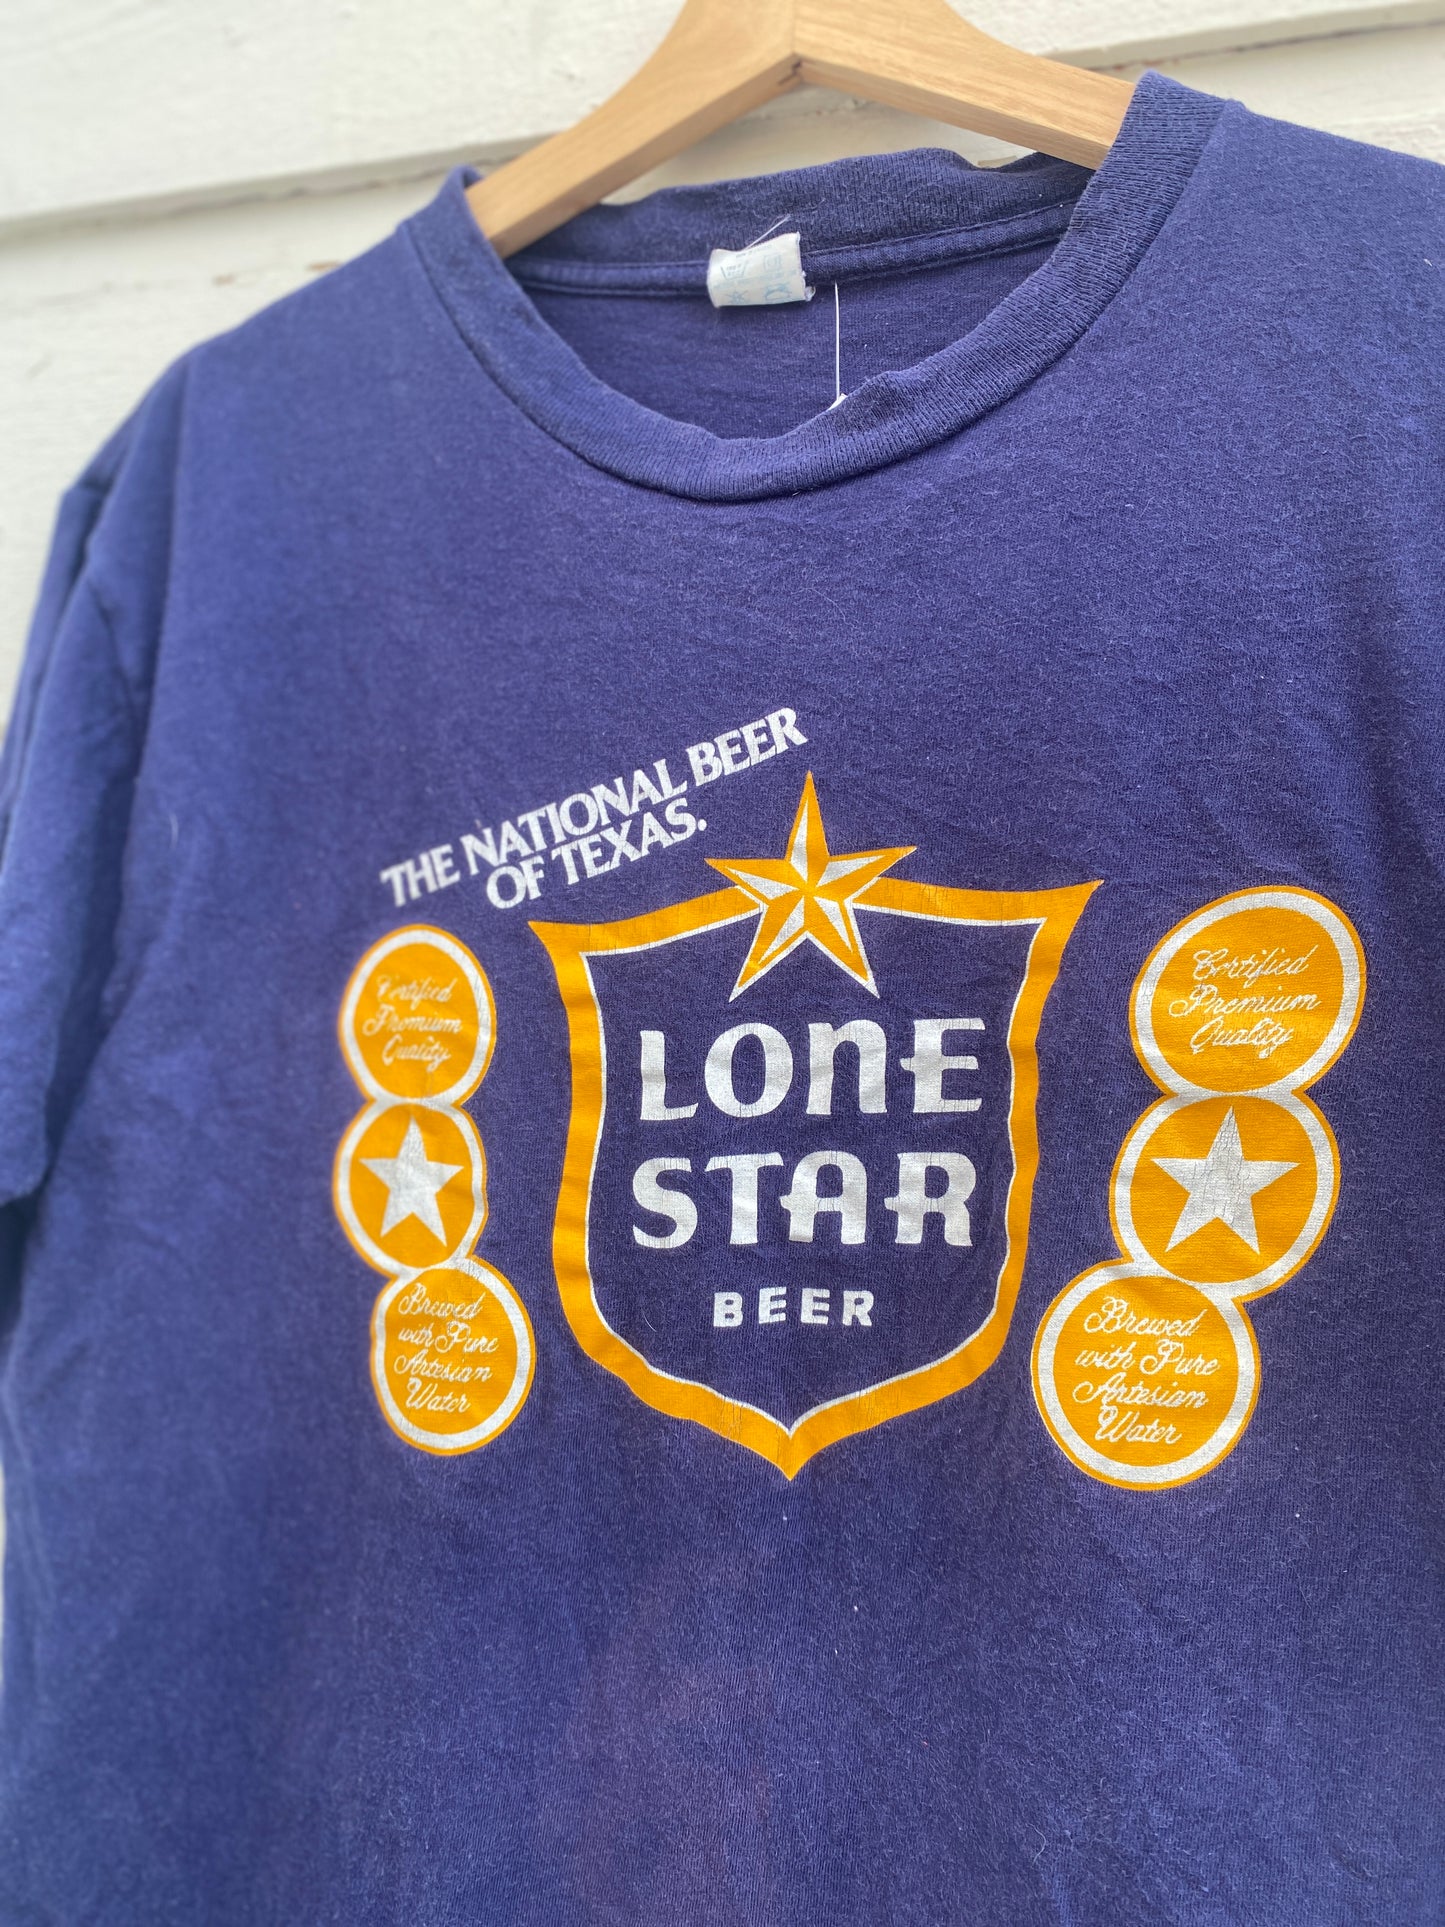 Vintage 1980s Texas Lone Star Beer Tshirt Large